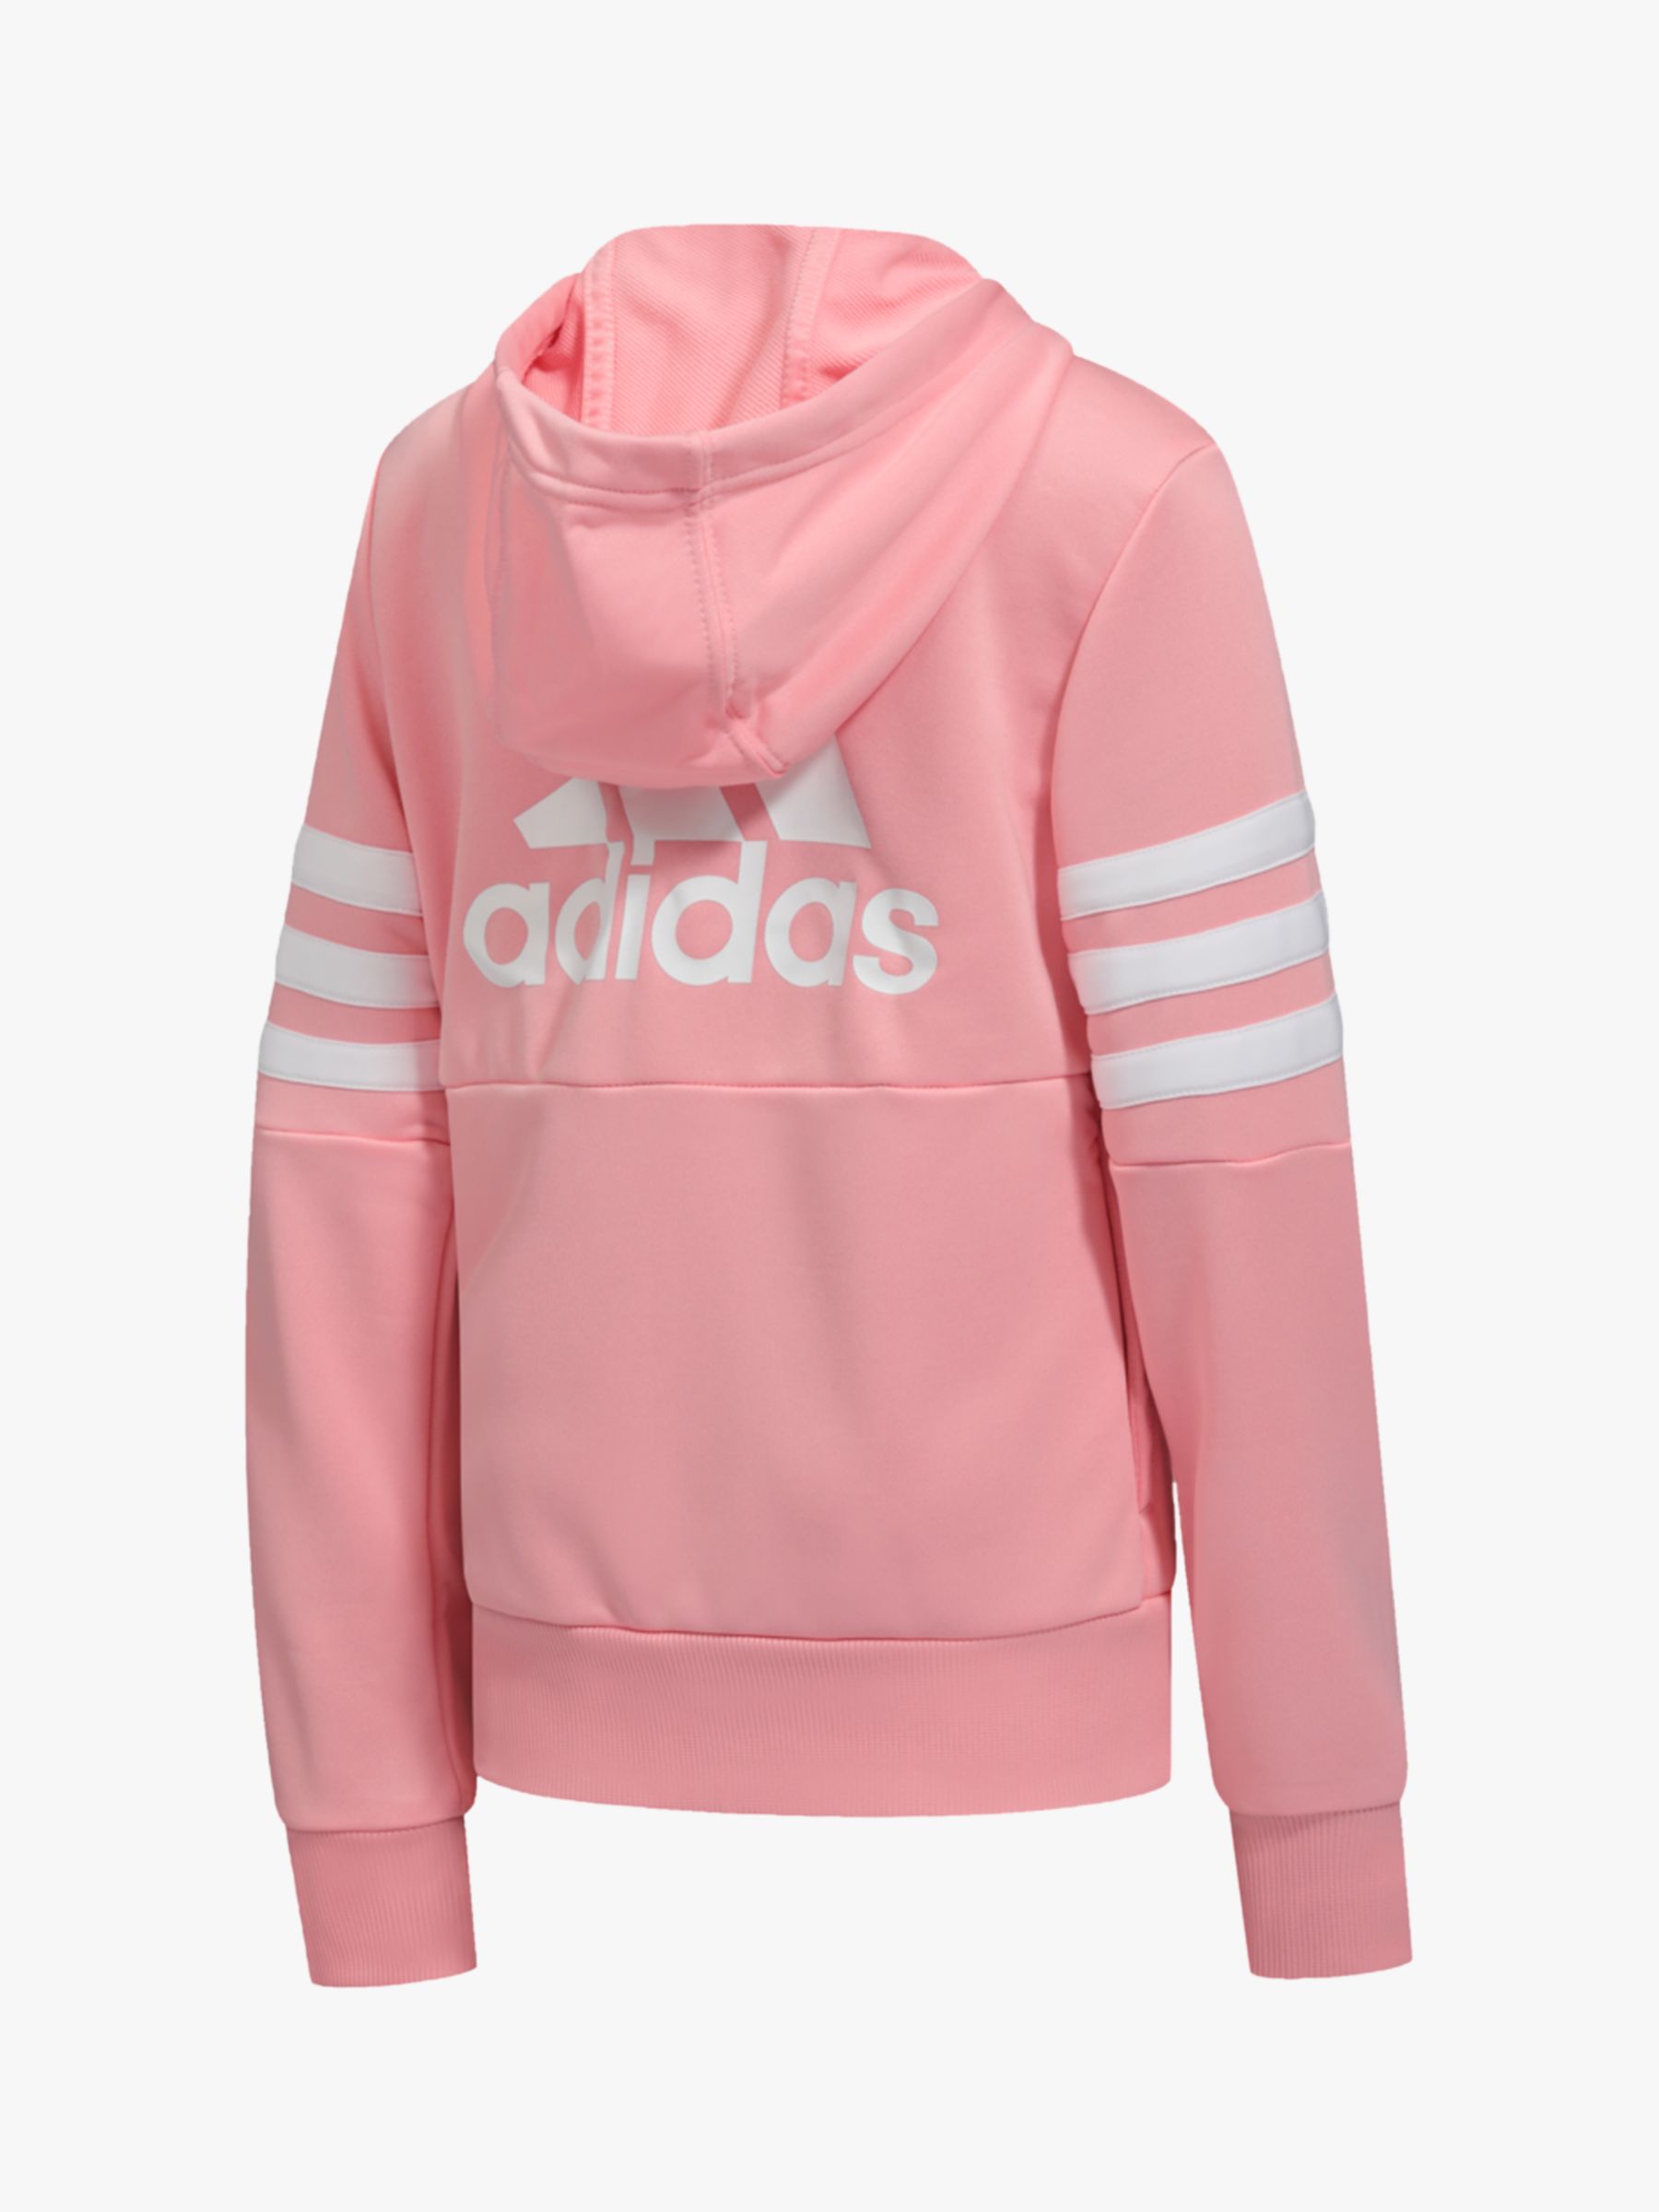 girls pink adidas jacket